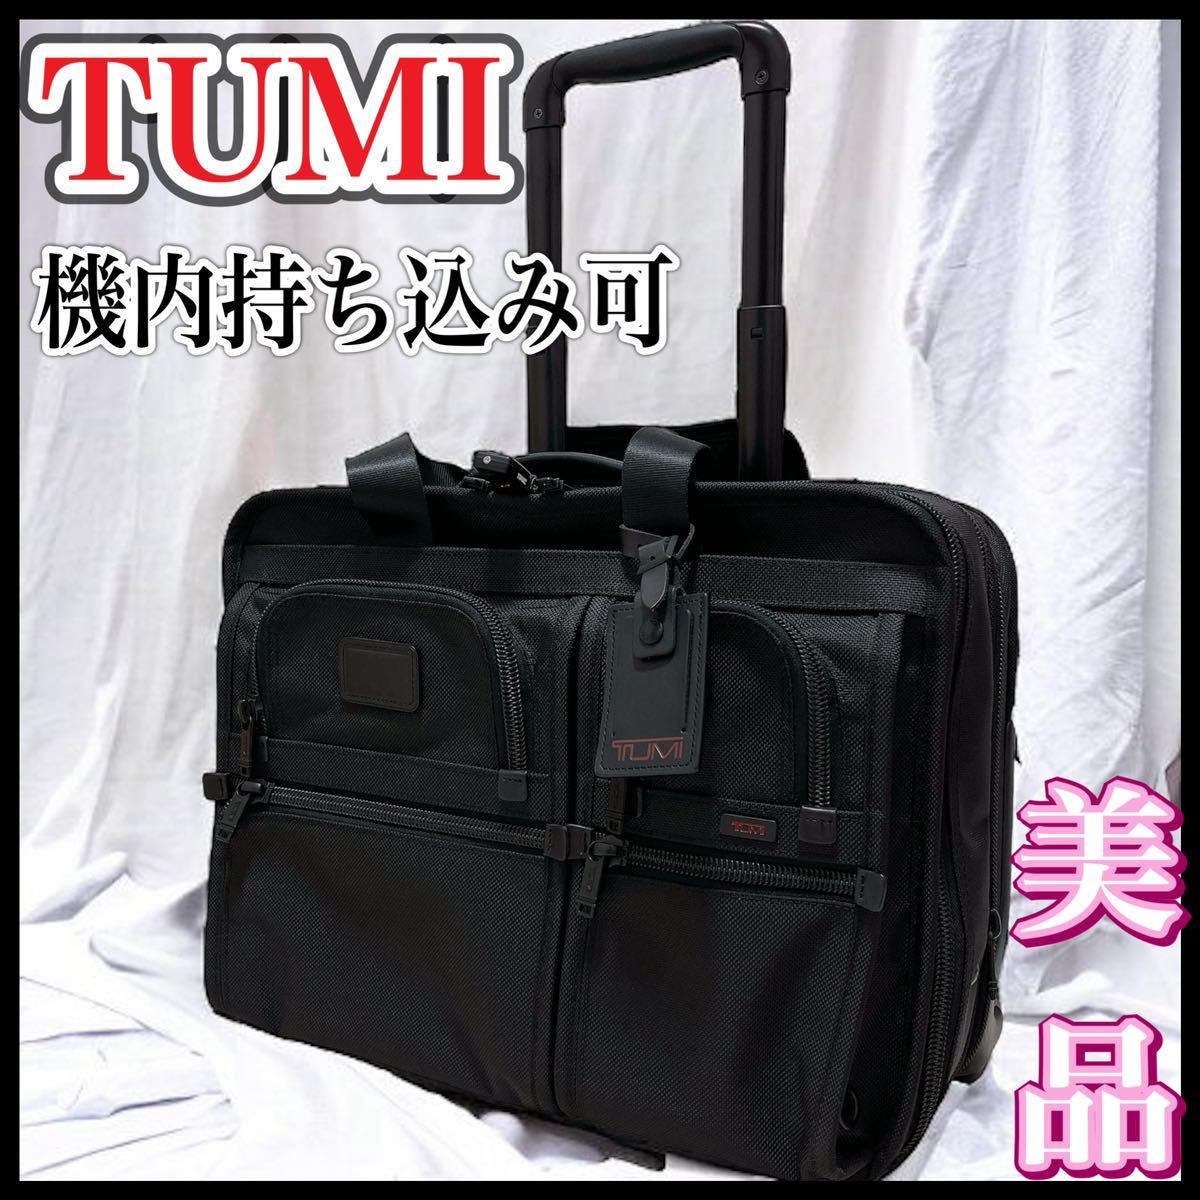 TUMI トゥミ キャスター付バッグ キャリー TSAロック付 26103DH-